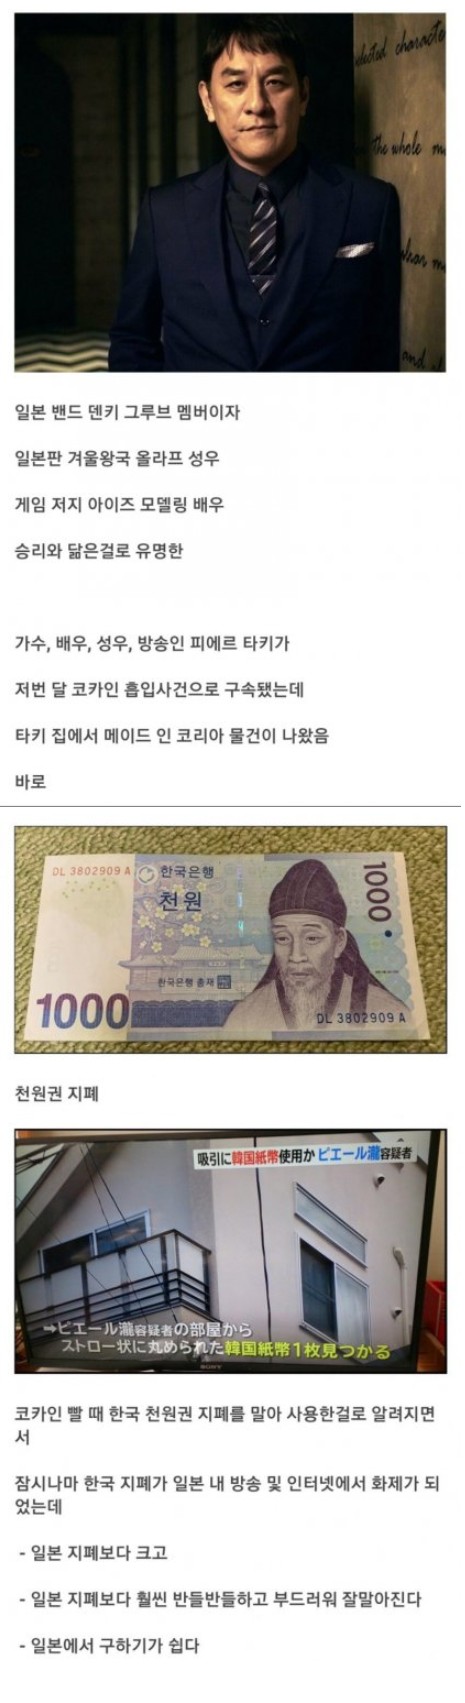 日本で話題になった韓国紙幣featビッグバン勝利の観相